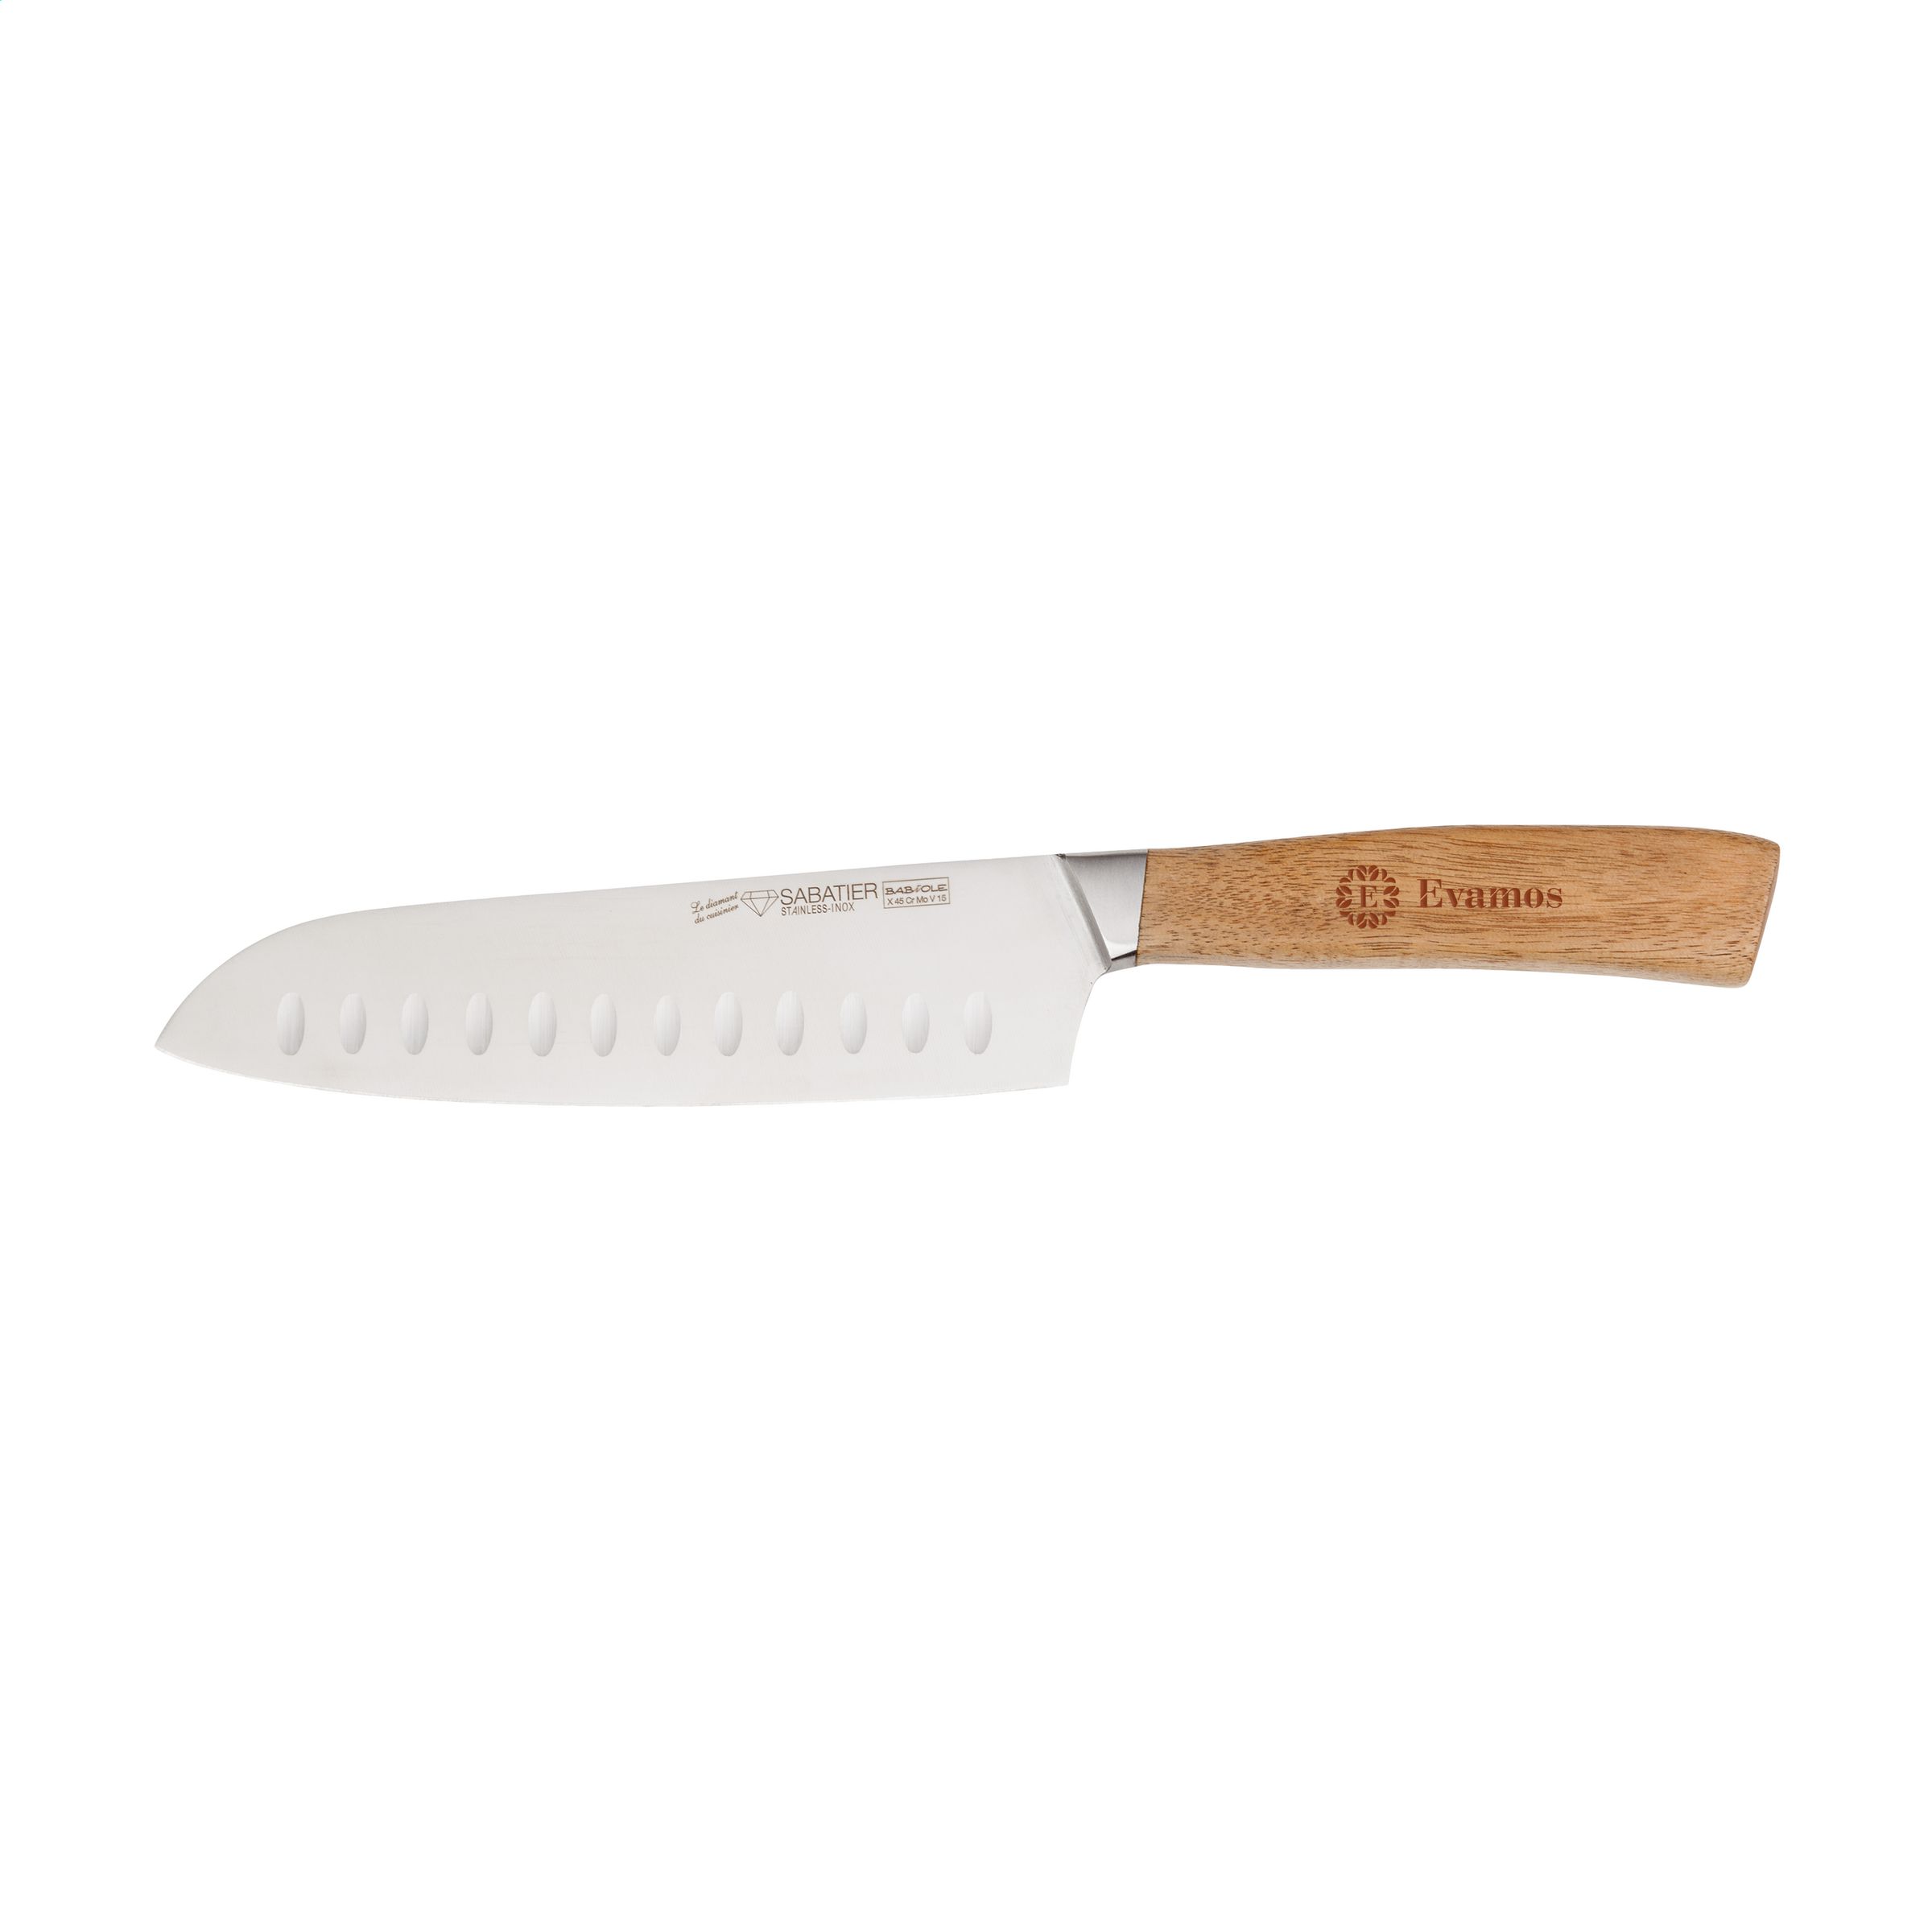 Couteau Santoku polyvalent de la gamme Babiole de Diamant Sabatier - Beaumont-du-Périgord